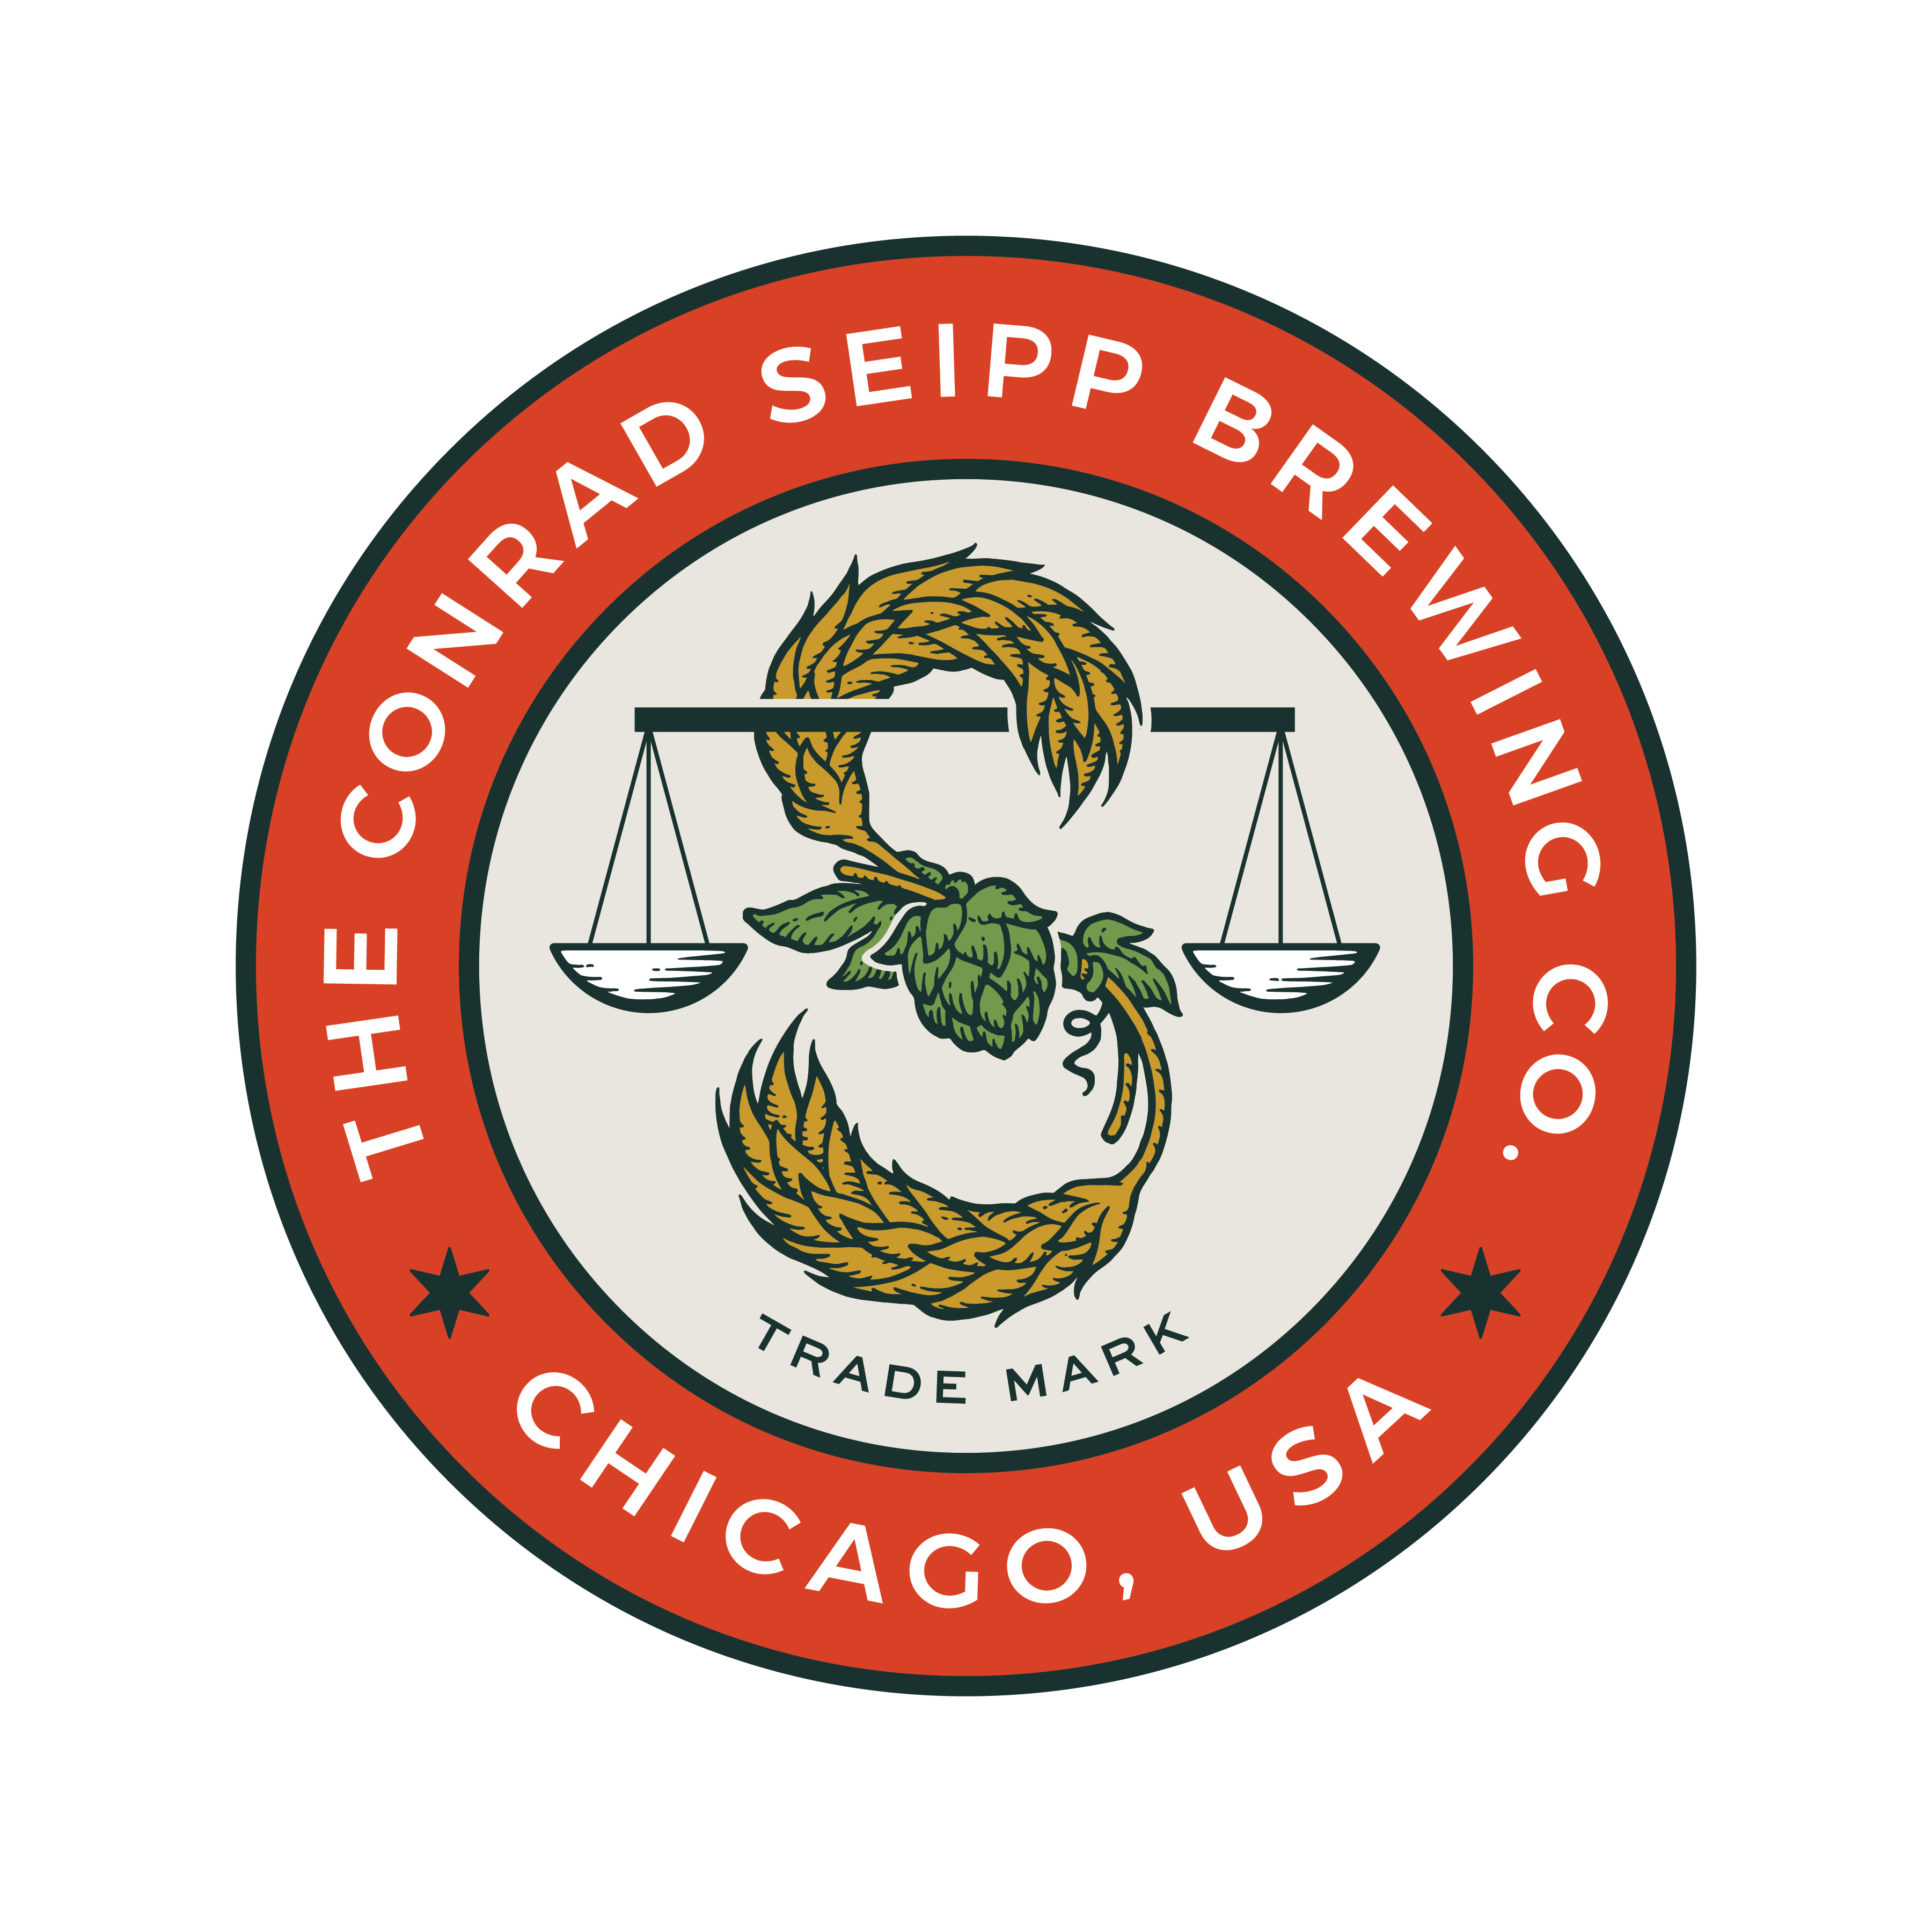 The Conrad Seipp Brewing Company